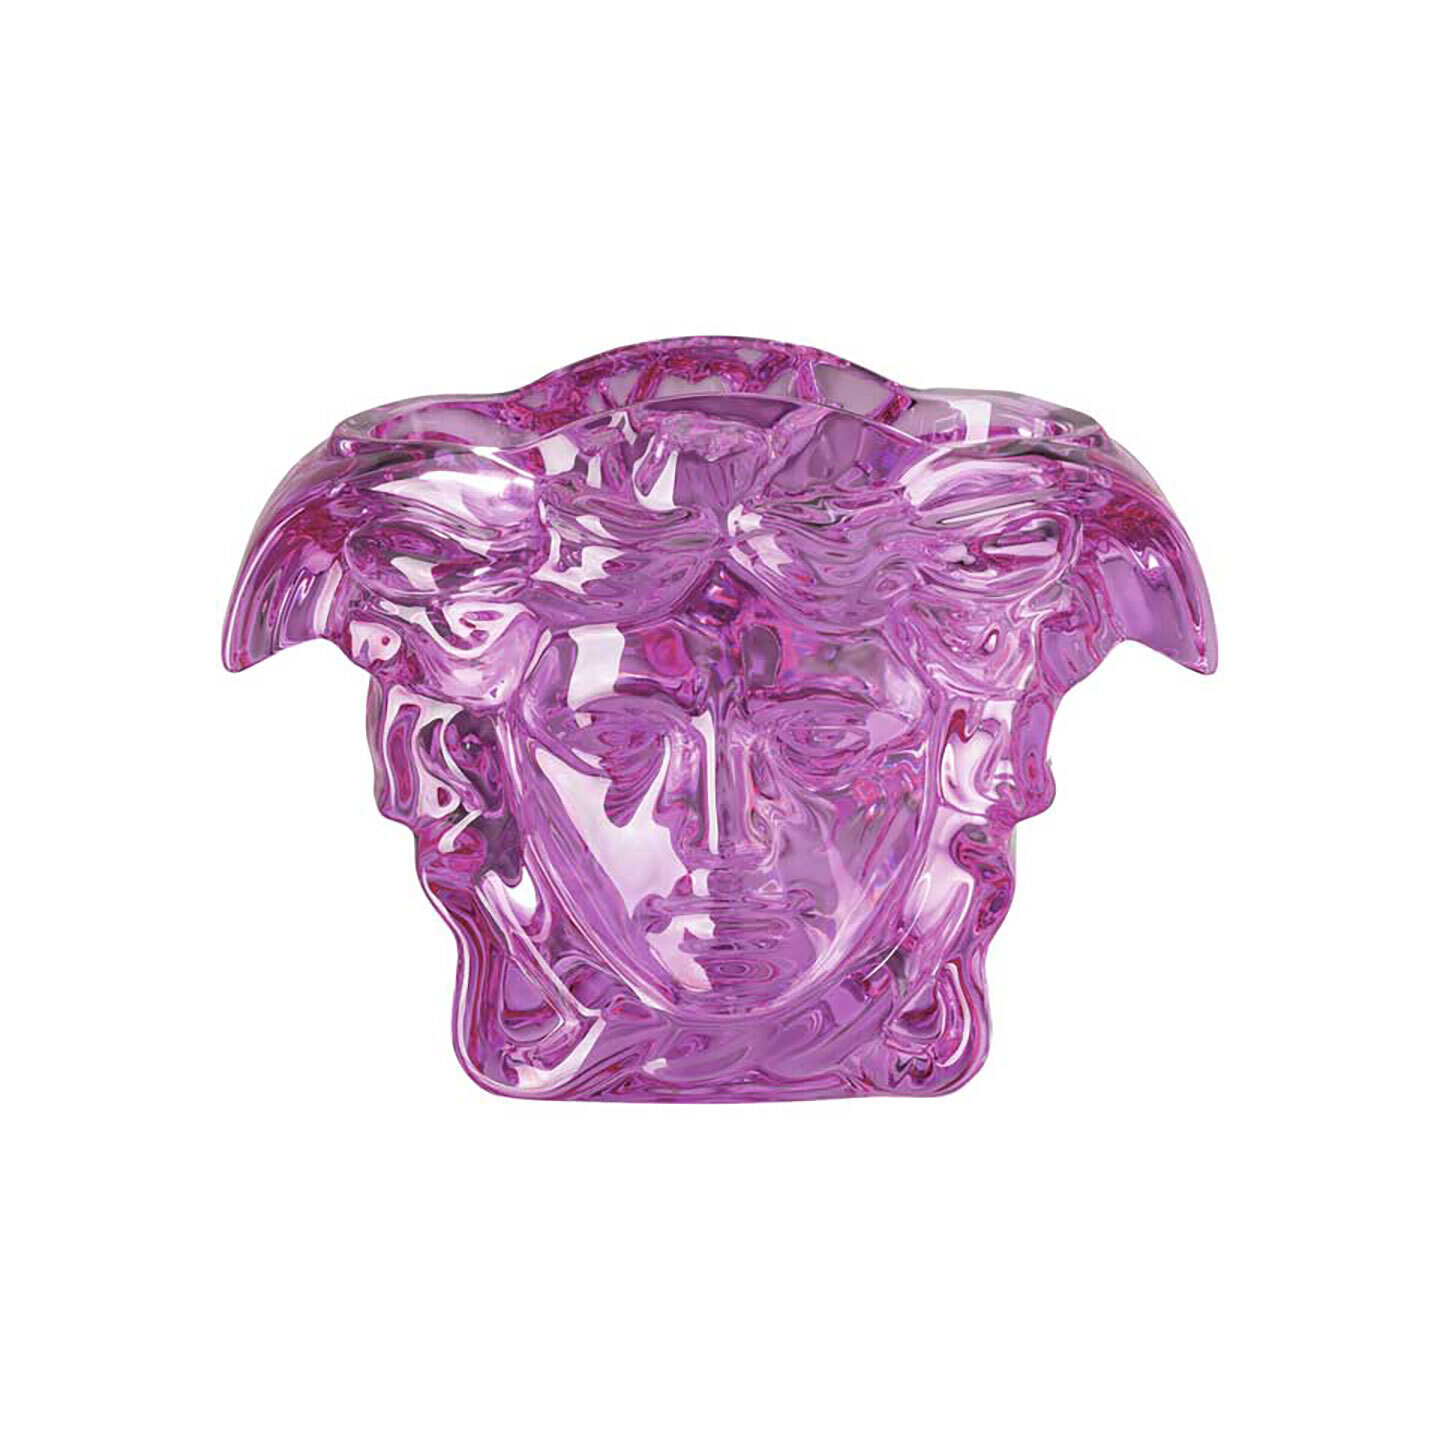 Versace Medusa Grande Vase Crystal Pink 7 1/2 Inch